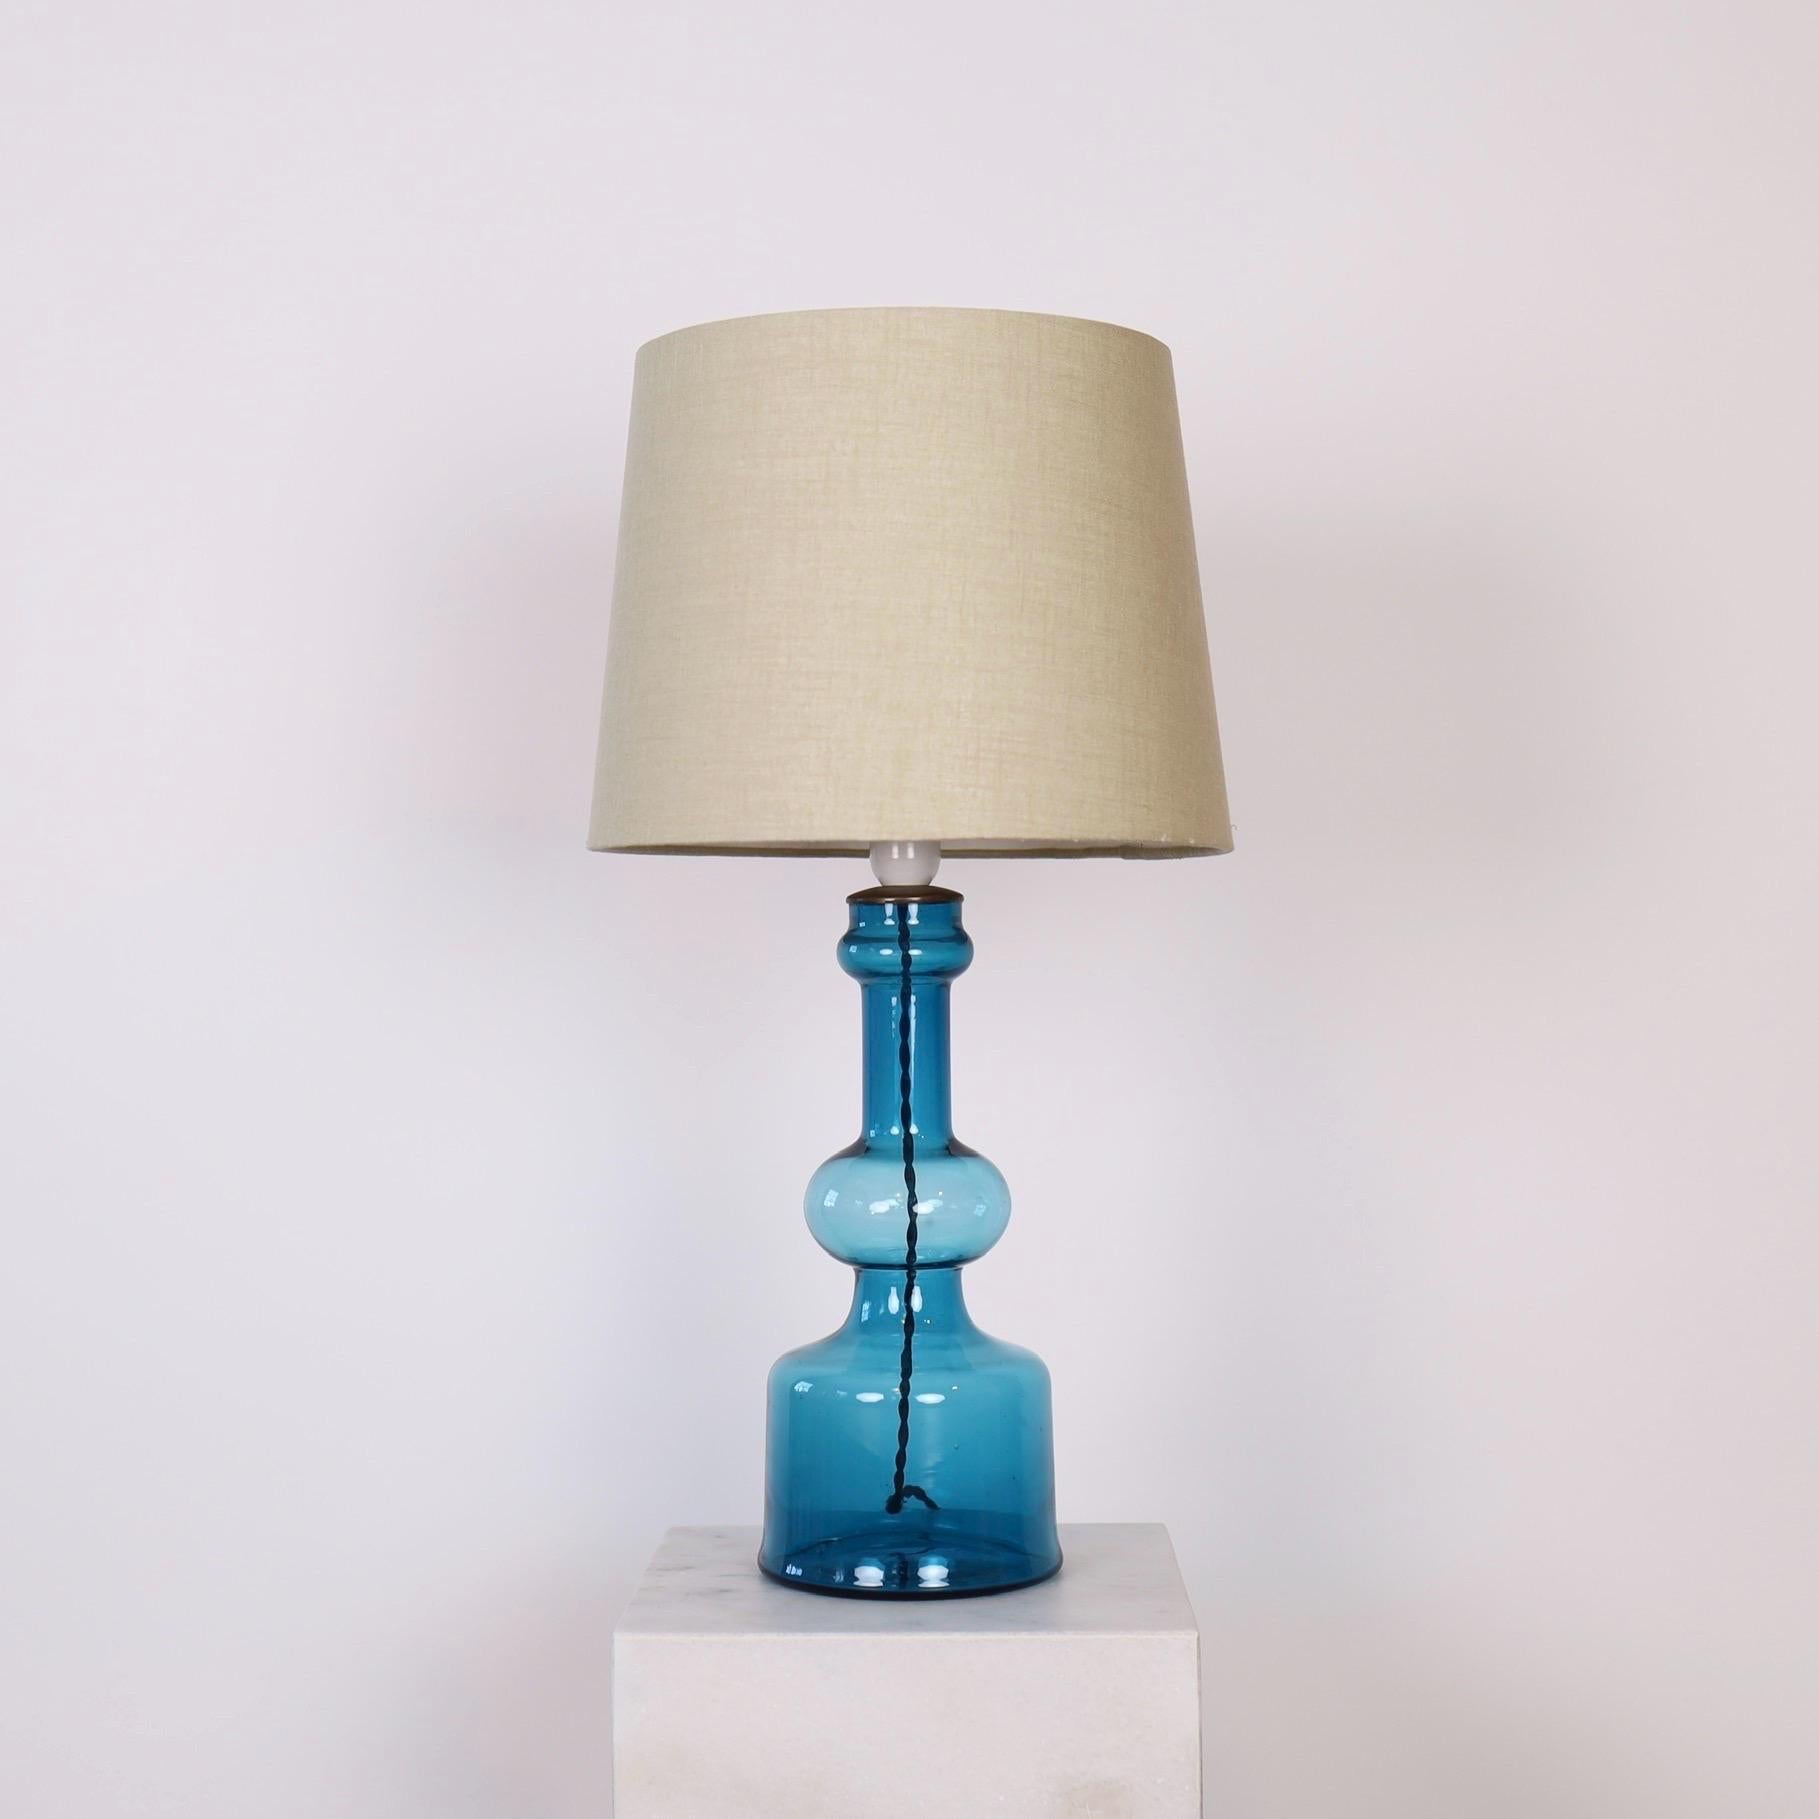 Lampe de bureau en verre bleu clair conçue par Design-Light en 1966 pour Fog & Mørup. Cette pièce accrocheuse est l'une des trois pièces de son trio pour Fog & Mørup. Nous avons le Trio disponible. 

* Lampe de table en verre transparent bleu clair